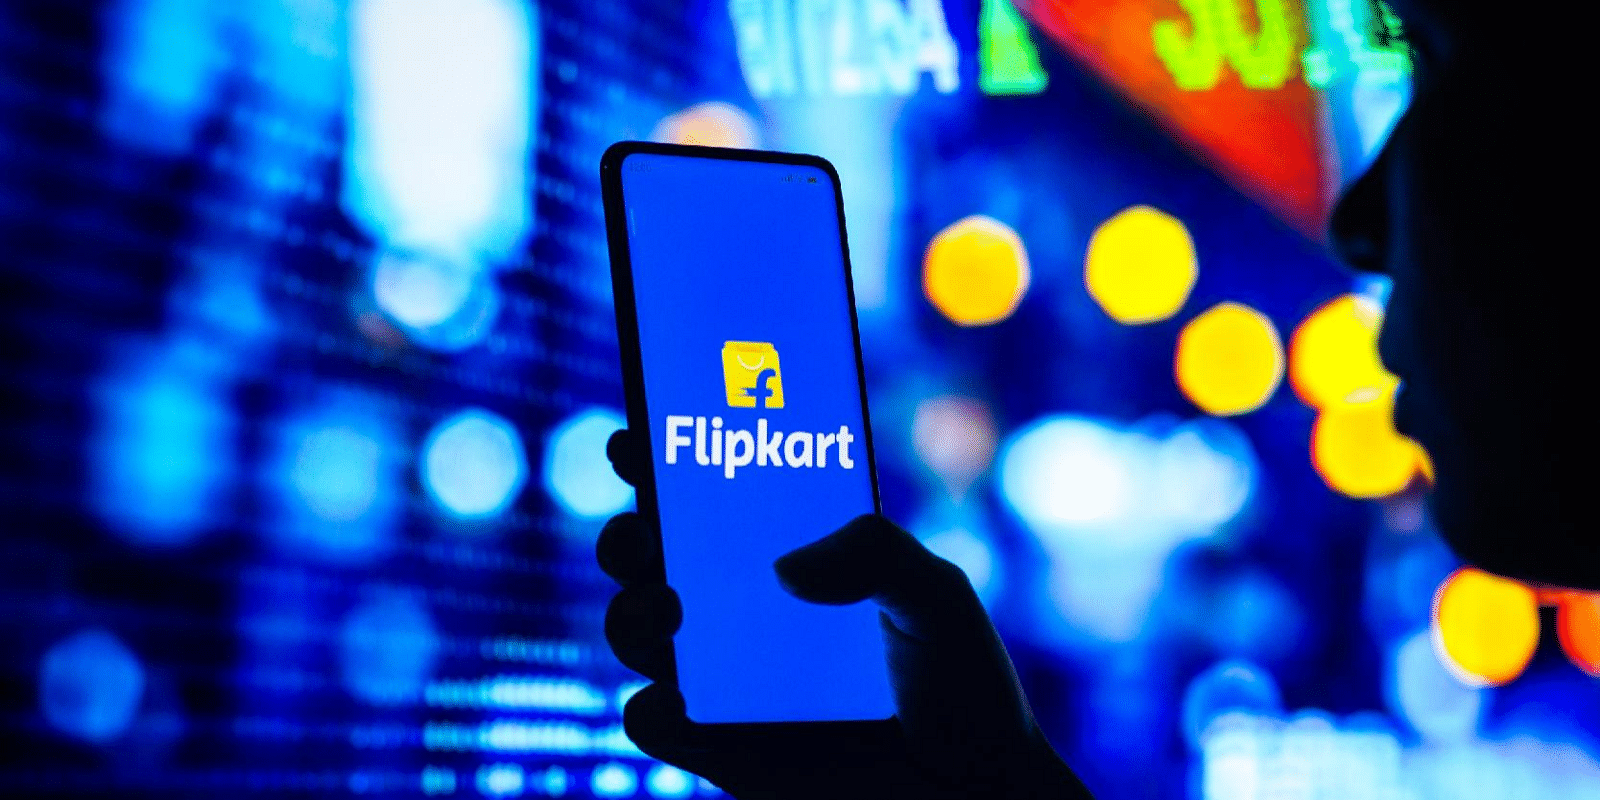 Flipkart sees top-deck rejig: Reports